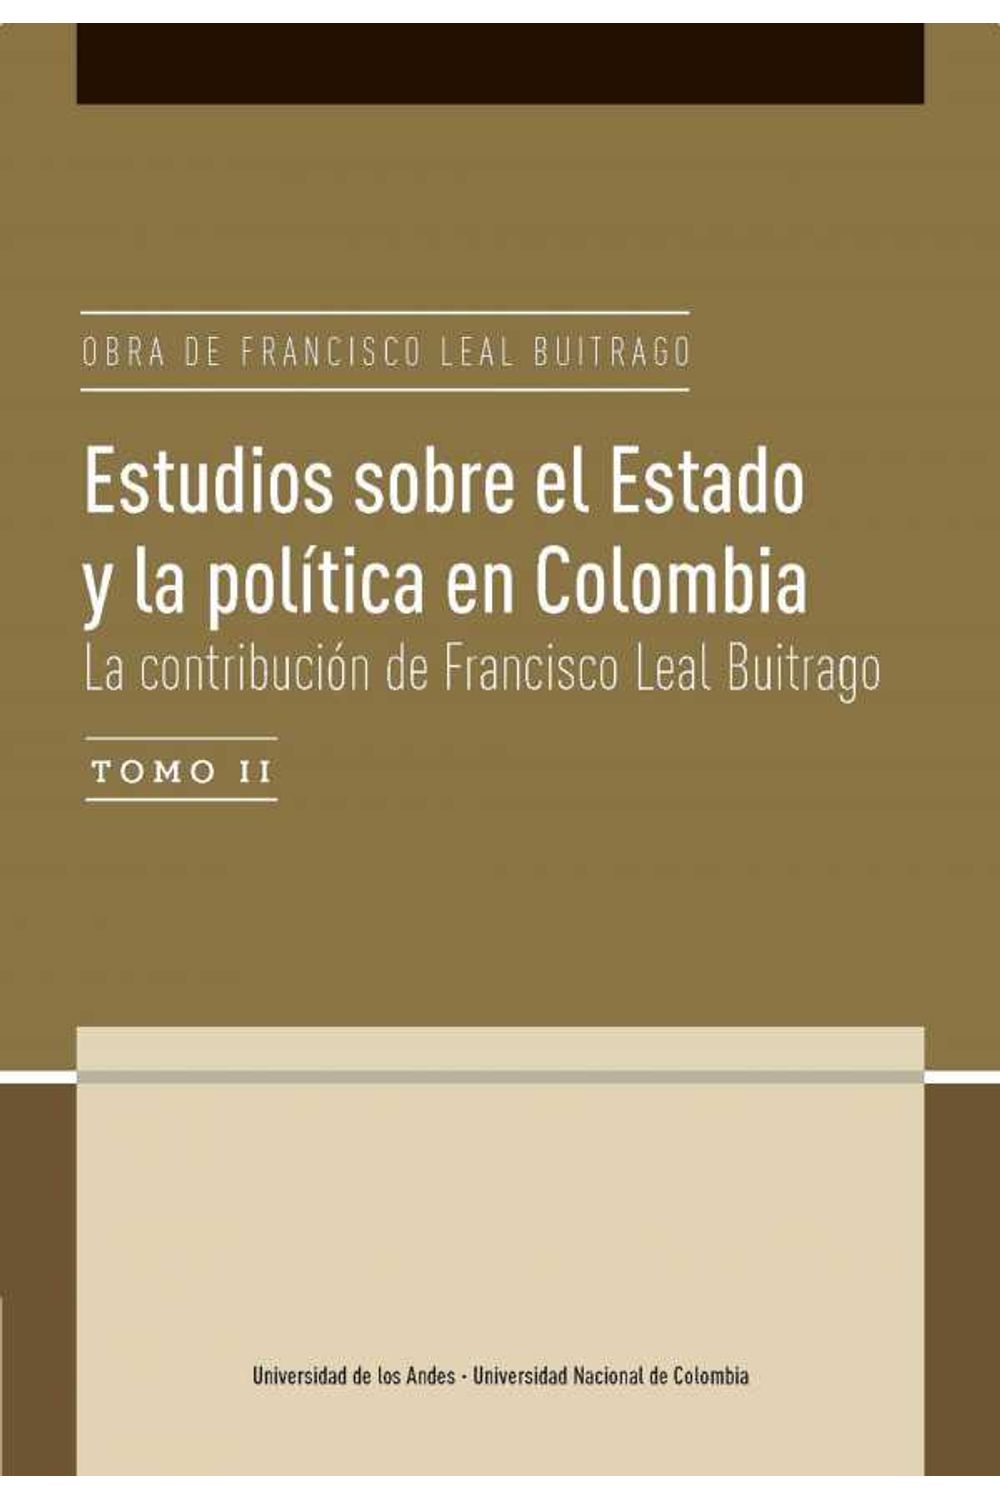 bw-estudios-sobre-el-estado-y-la-poliacutetica-en-colombia-la-contribucioacuten-de-francisco-leal-buitrago-u-de-los-andes-9789587744583